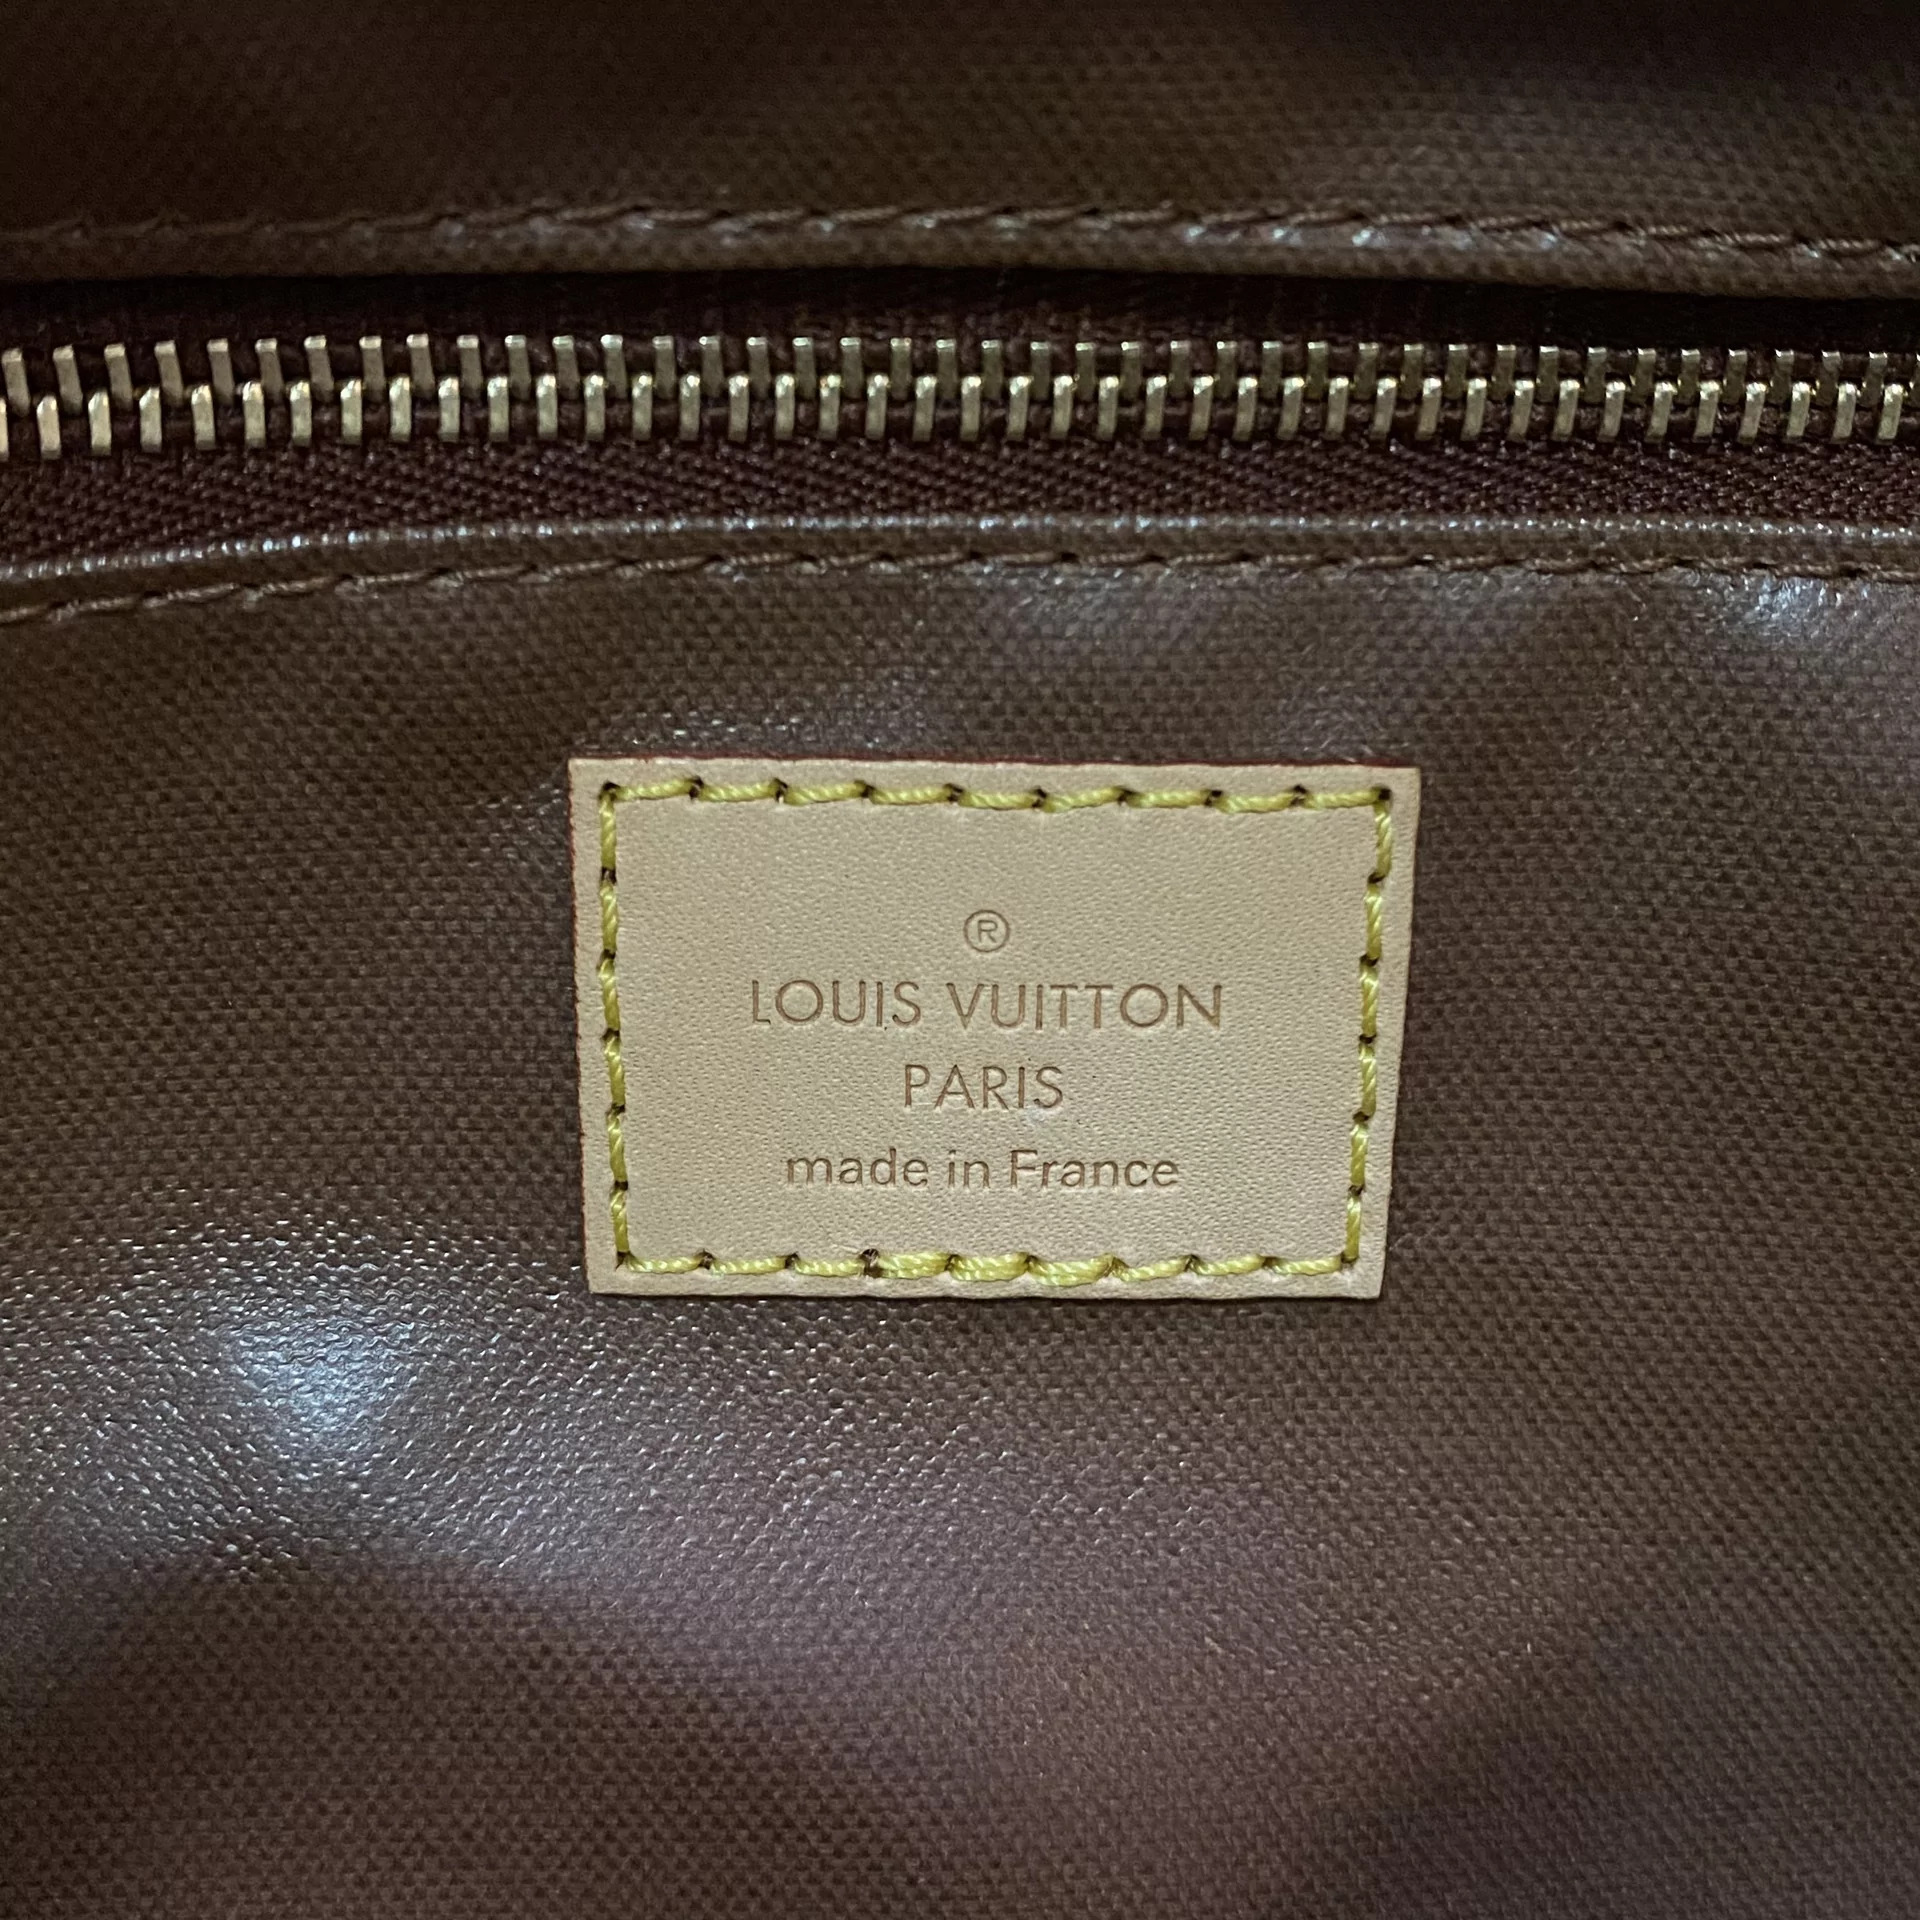 Nécessaire Louis Vuitton Trousse de Toillette 25